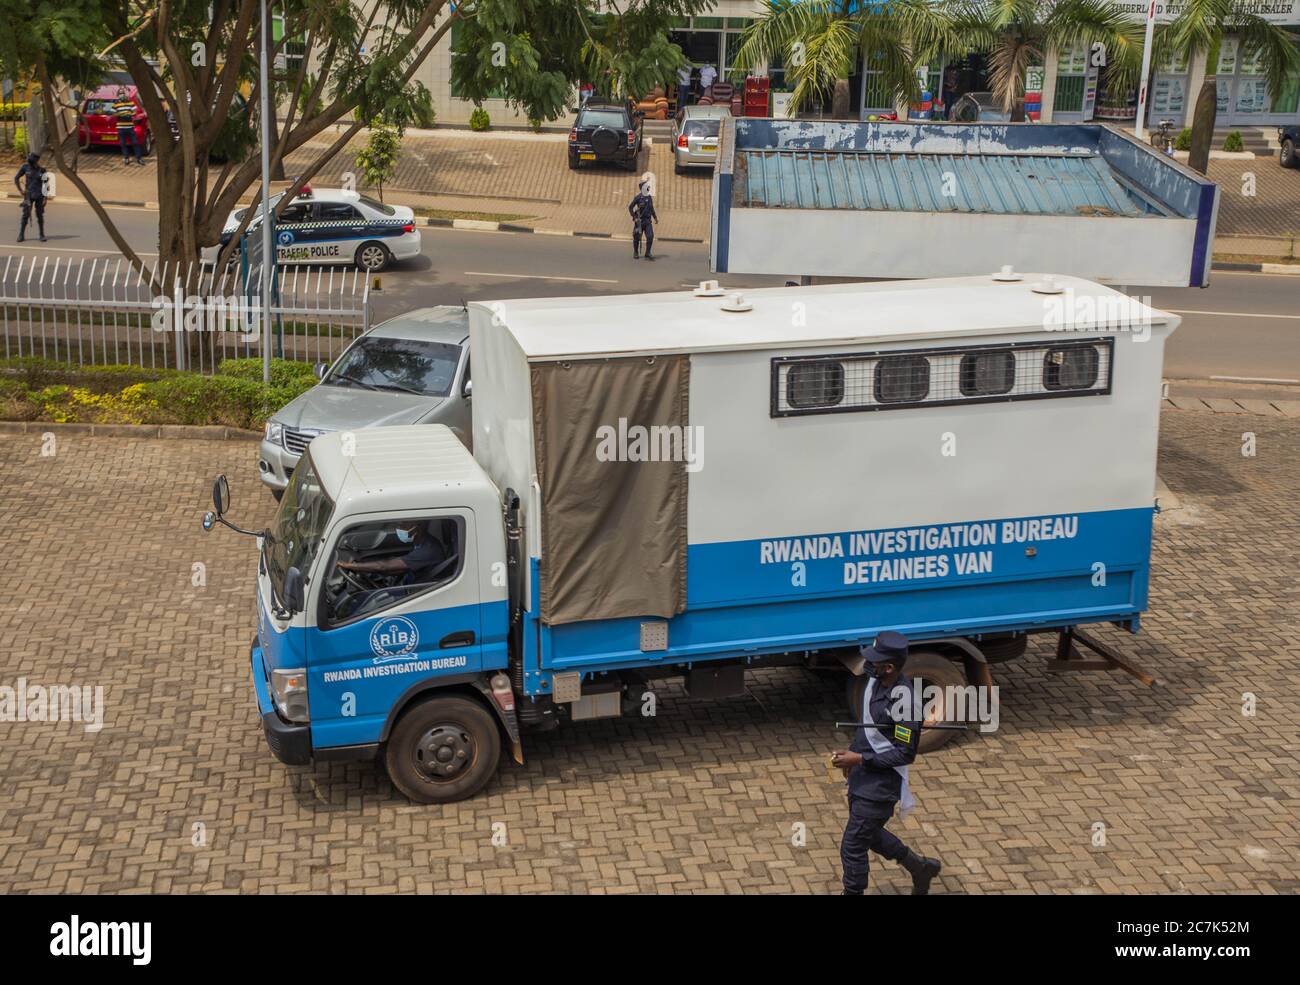 (200718) -- KIGALI, 18 juillet 2020 (Xinhua) -- UNE fourgonnette transportant des rebelles présumés arrive au quartier général de la police métropolitaine de Kigali, à Kigali, au Rwanda, le 17 juillet 2020. Le Bureau des enquêtes du Rwanda (RIB) a défilé vendredi dans les rues 57 rebelles présumés qui ont été récemment arrêtés dans les jungles de la République démocratique du Congo (RDC) voisine. (Photo de Cyril Ndegeya/Xinhua) Banque D'Images